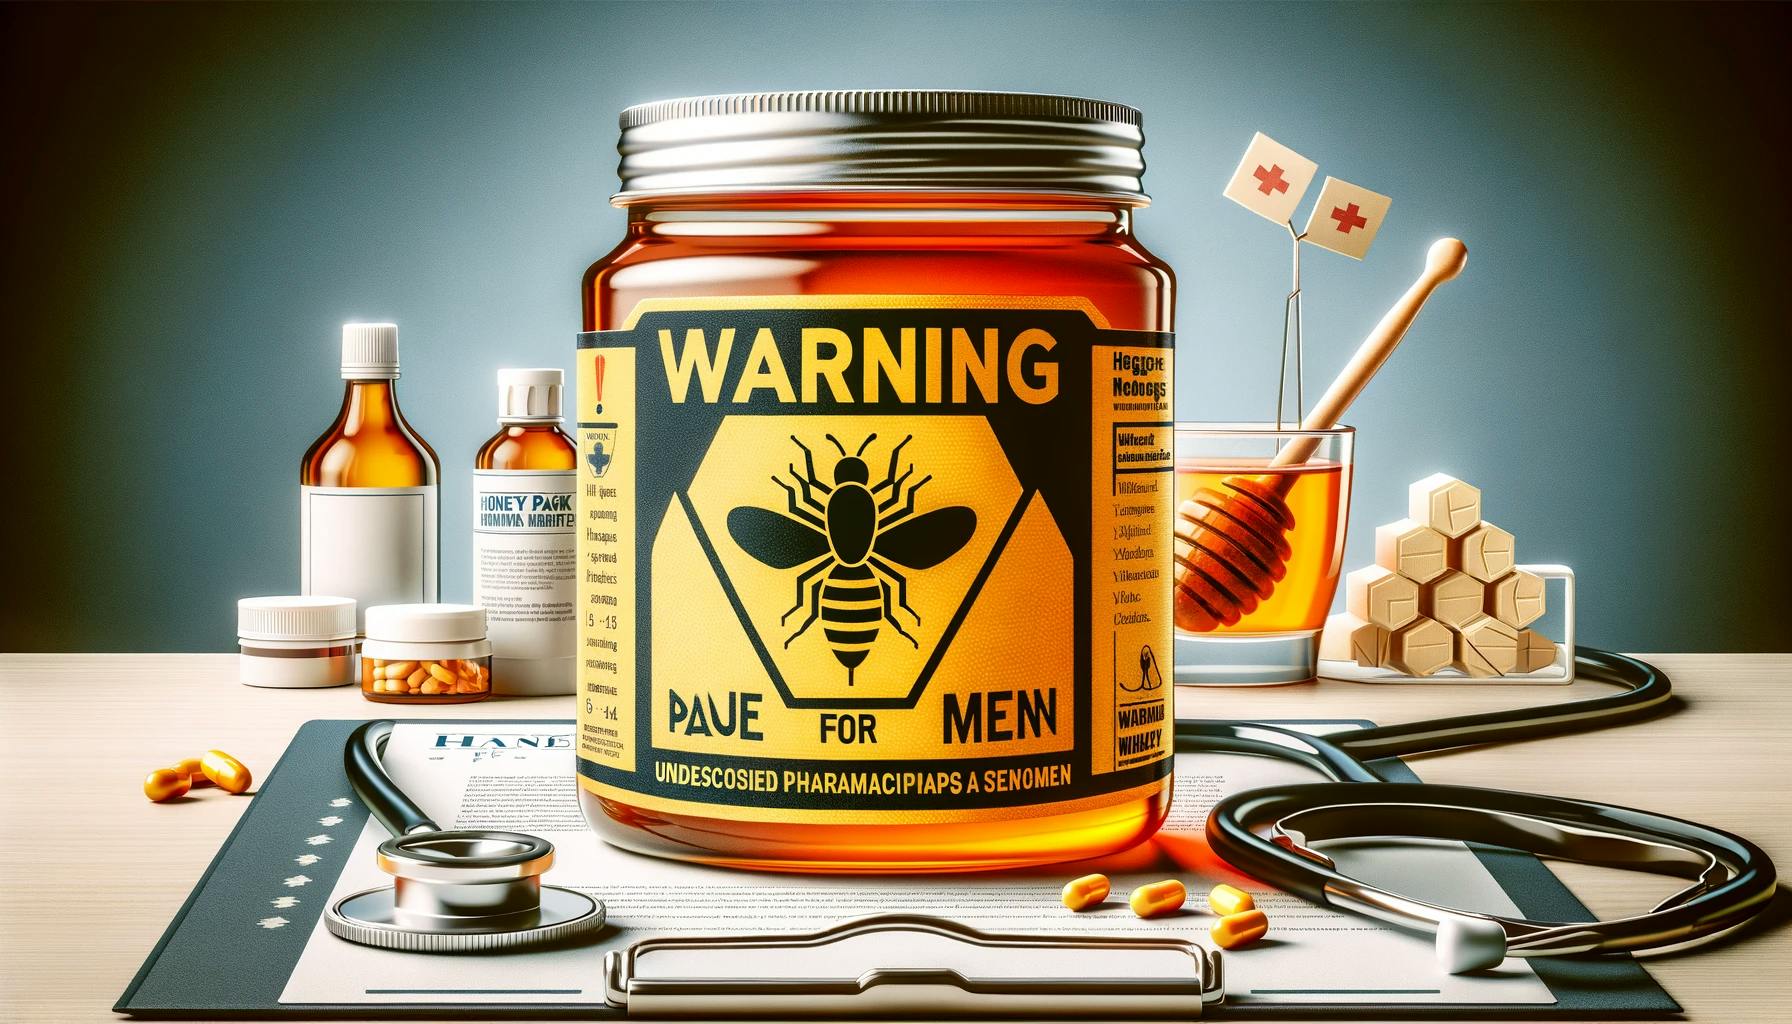 Understanding the Risks of "Honey Pack for Men"